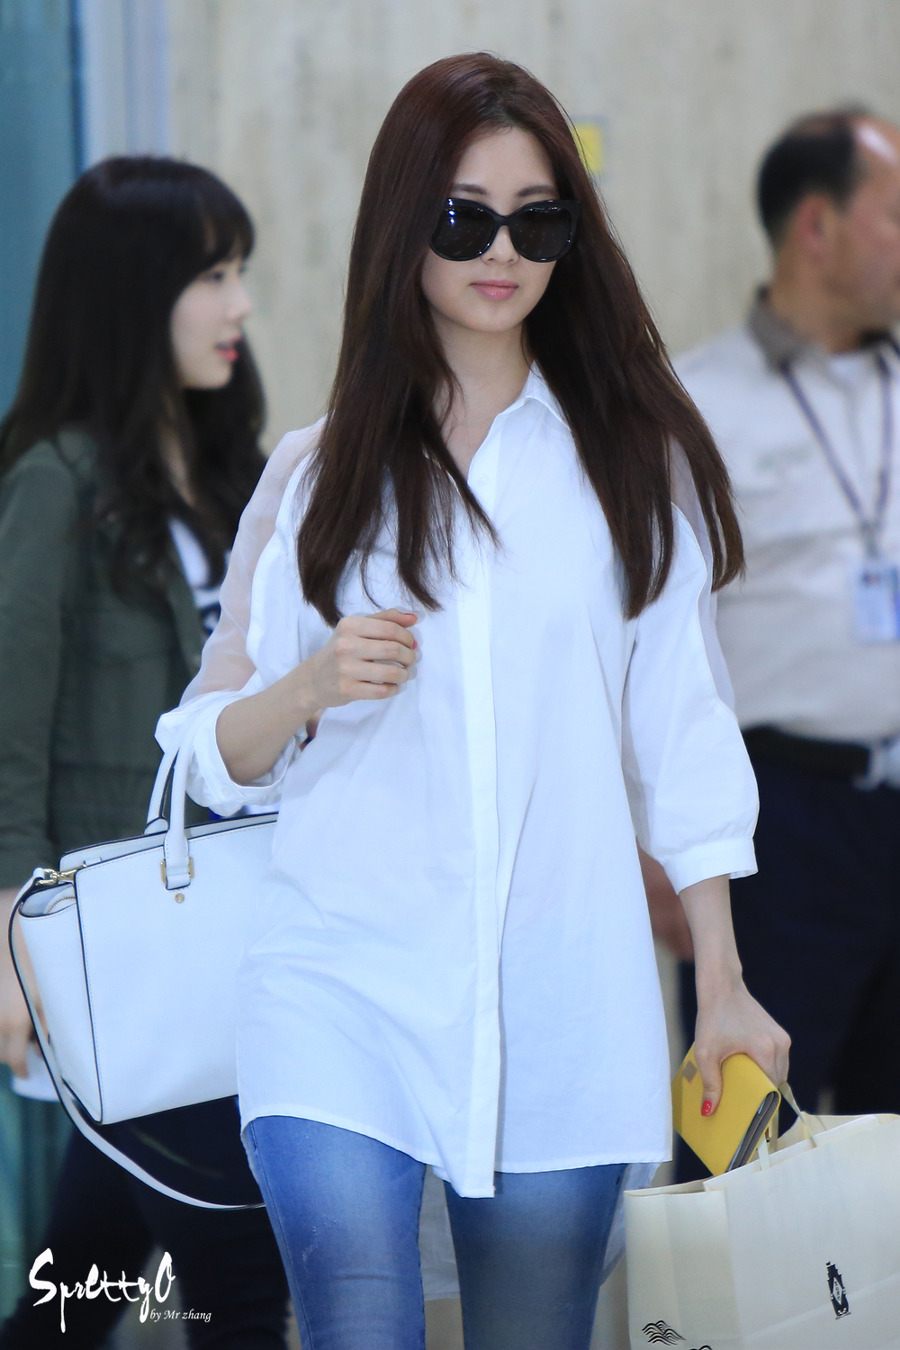 [PIC][26-05-2014]TaeYeon - Tiffany - HyoYeon và SeoHyun trở về Hàn Quốc vào trưa nay 2634723353A81BF801FA4B